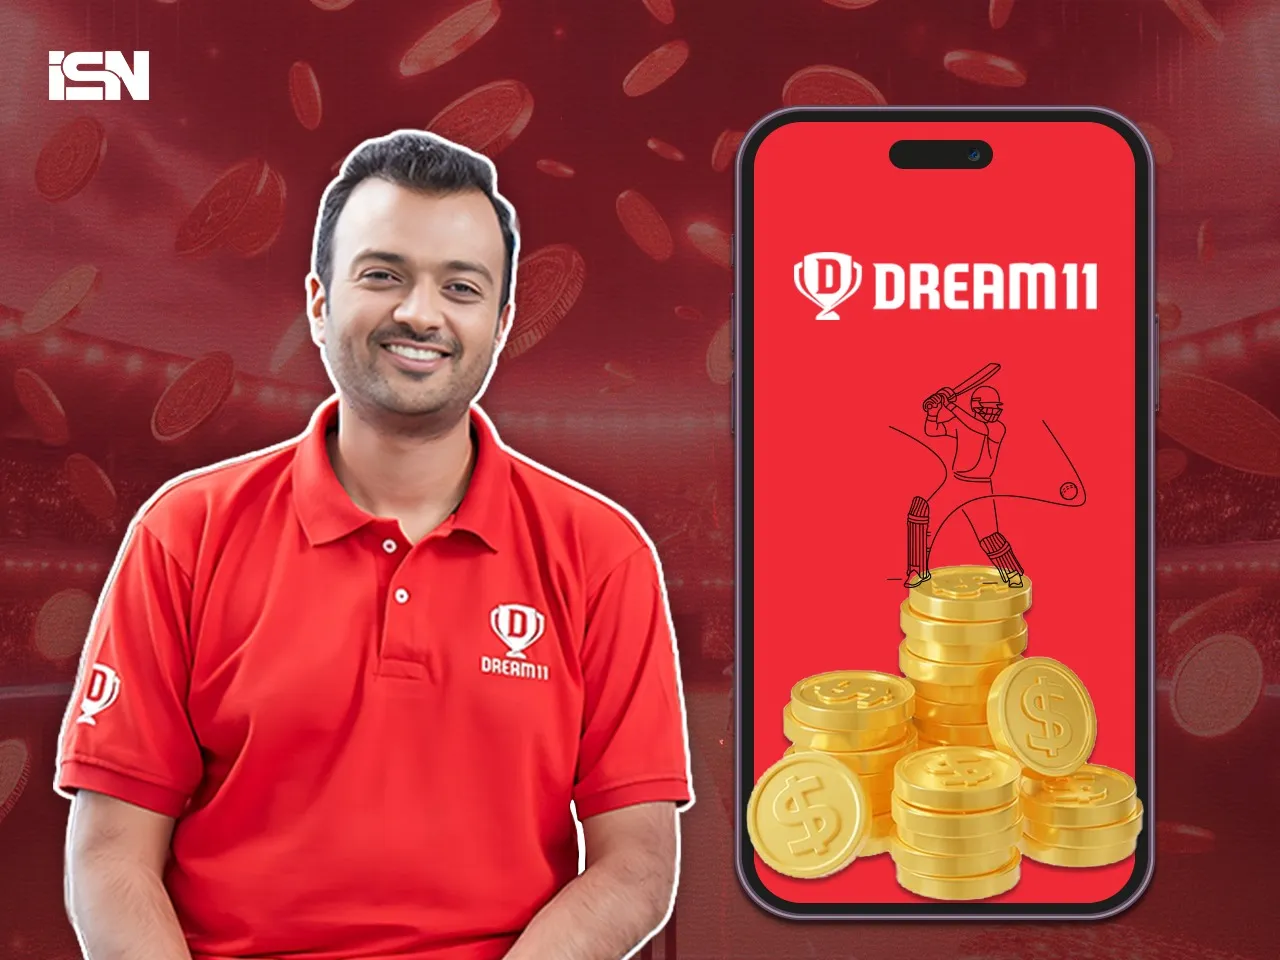 Dream11 Co-founder Harsh Jain